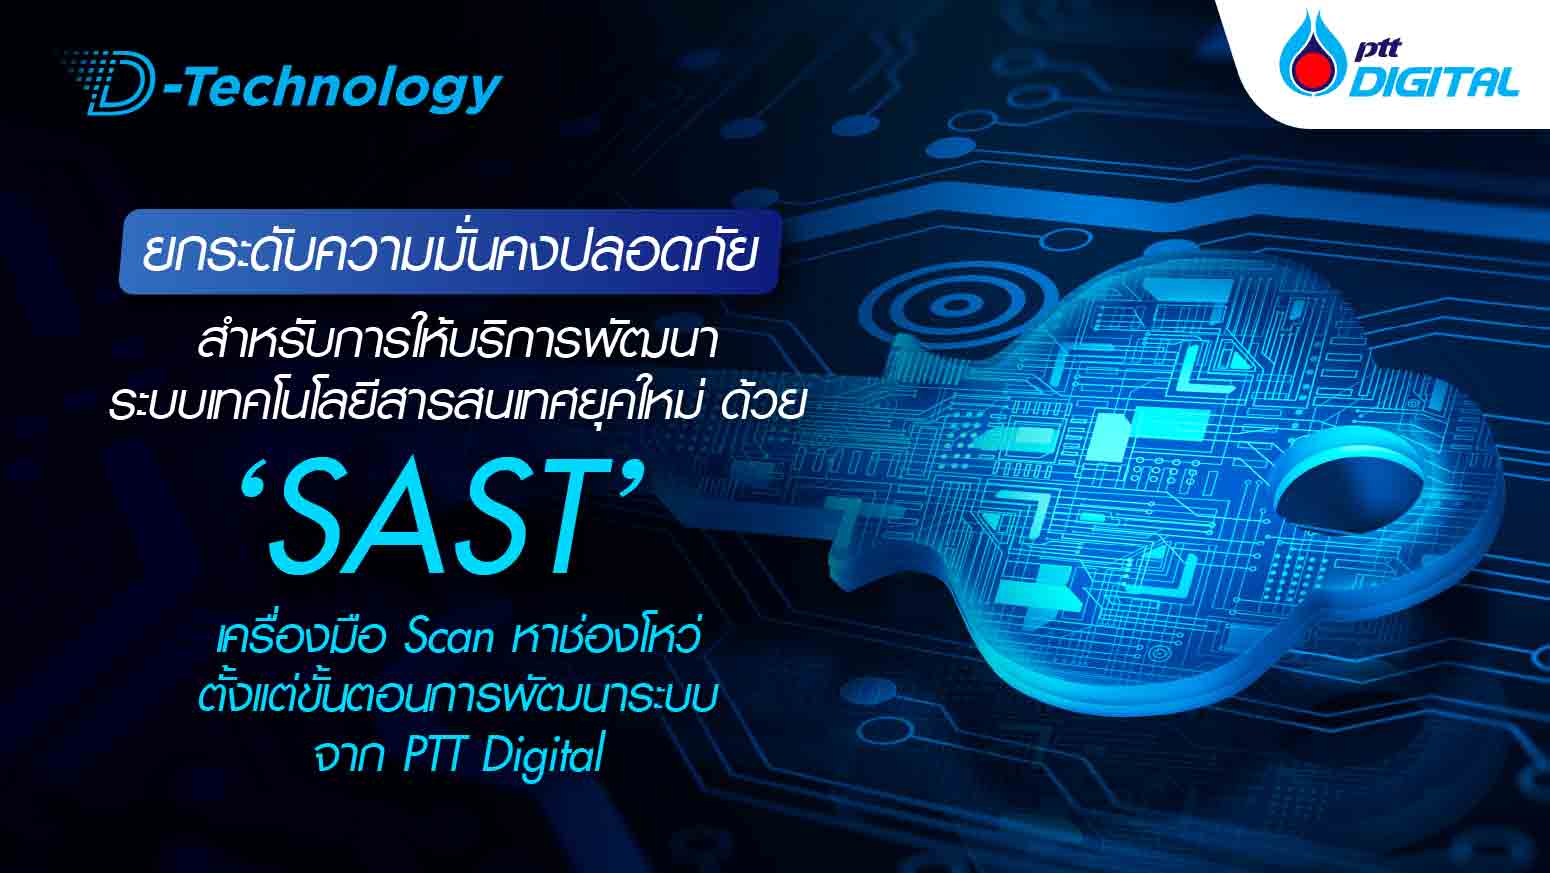 ยกระดับความมั่นคงปลอดภัยสำหรับการให้บริการพัฒนาระบบเทคโนโลยีสารสนเทศยุคใหม่ ด้วย SAST เครื่องมือ Scan หาช่องโหว่ตั้งแต่ขั้นตอนการพัฒนาระบบ จาก PTT Digital 